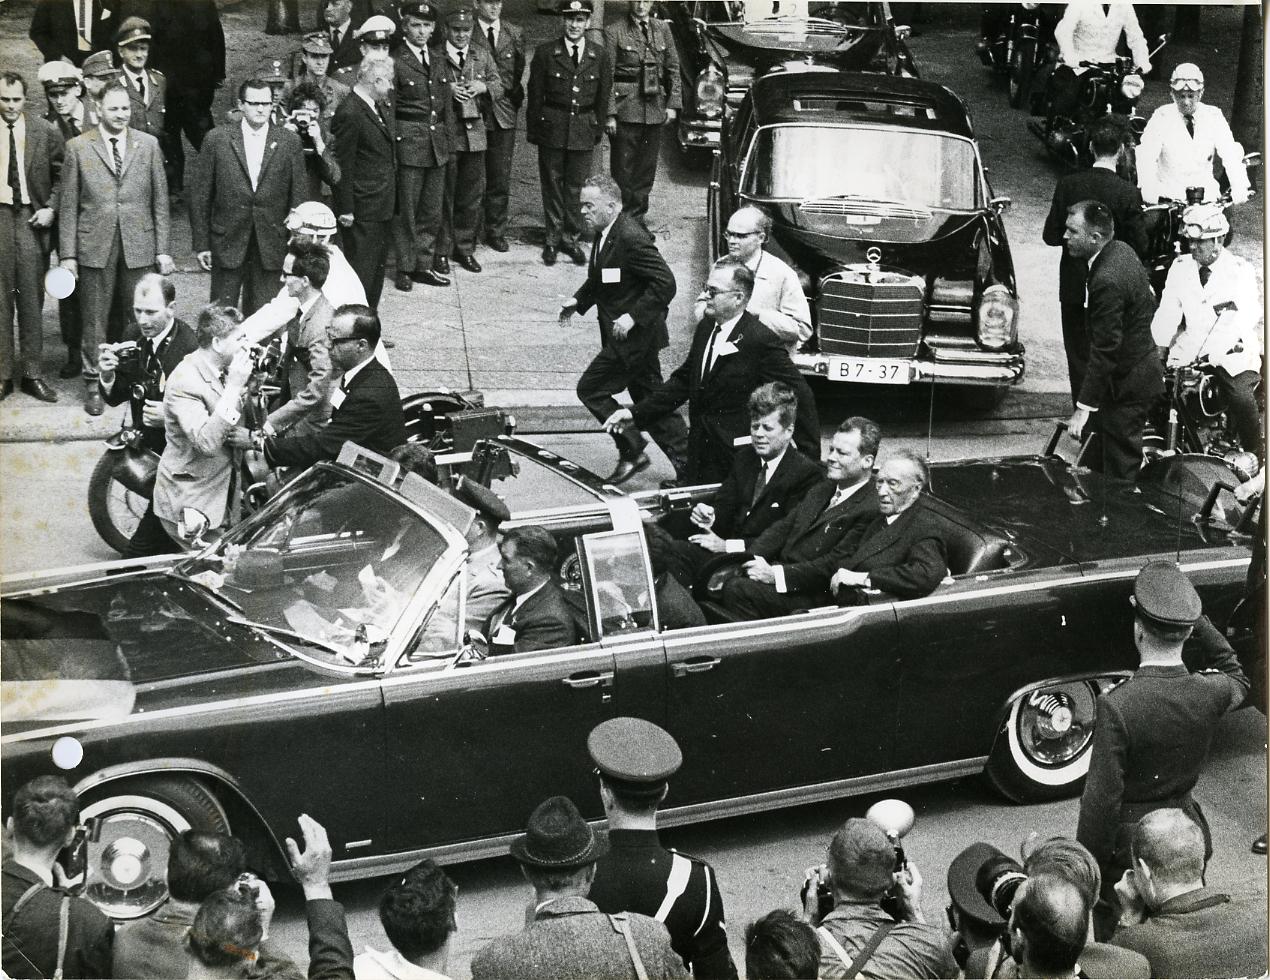 Foto: John F. Kennedy, Willy Brandt und Konrad Adenauer auf der Fahrt durch Berlin, 26. Juni 1963